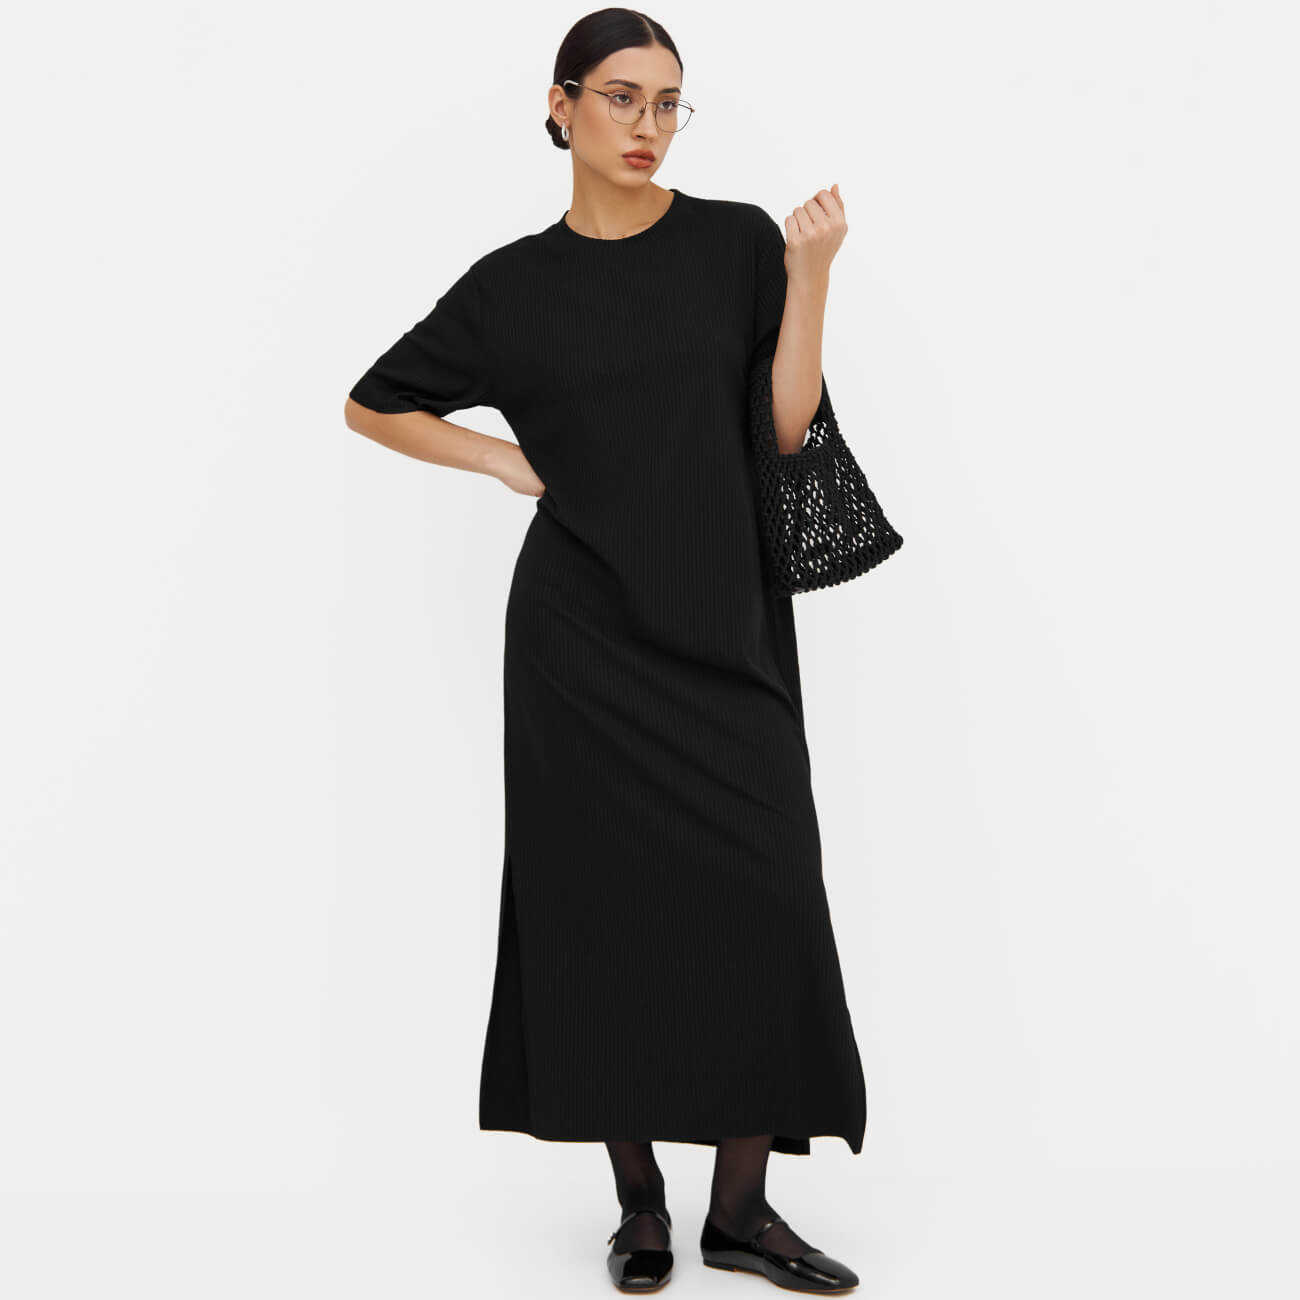 Платье женское, макси, р. S, с коротким рукавом, в рубчик, полиэстер/вискоза, черное, Rhea женское кружевное платье больших размеров элегантное вечернее черное платье